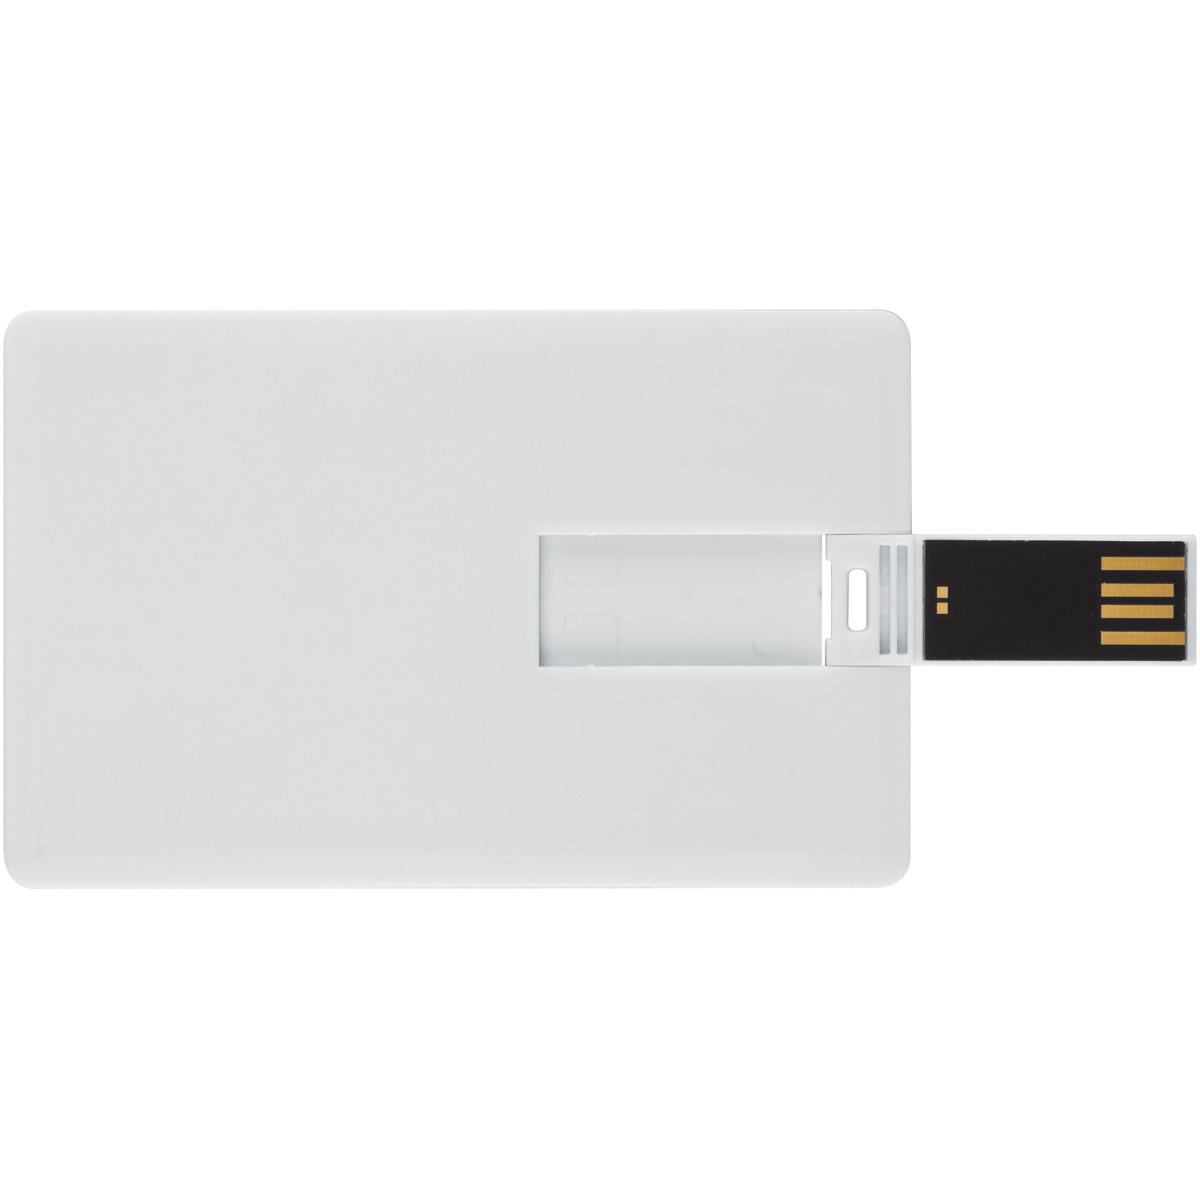 USB GERMANY GB) ® USB-Stick (Weiss, 8 Kreditkarte